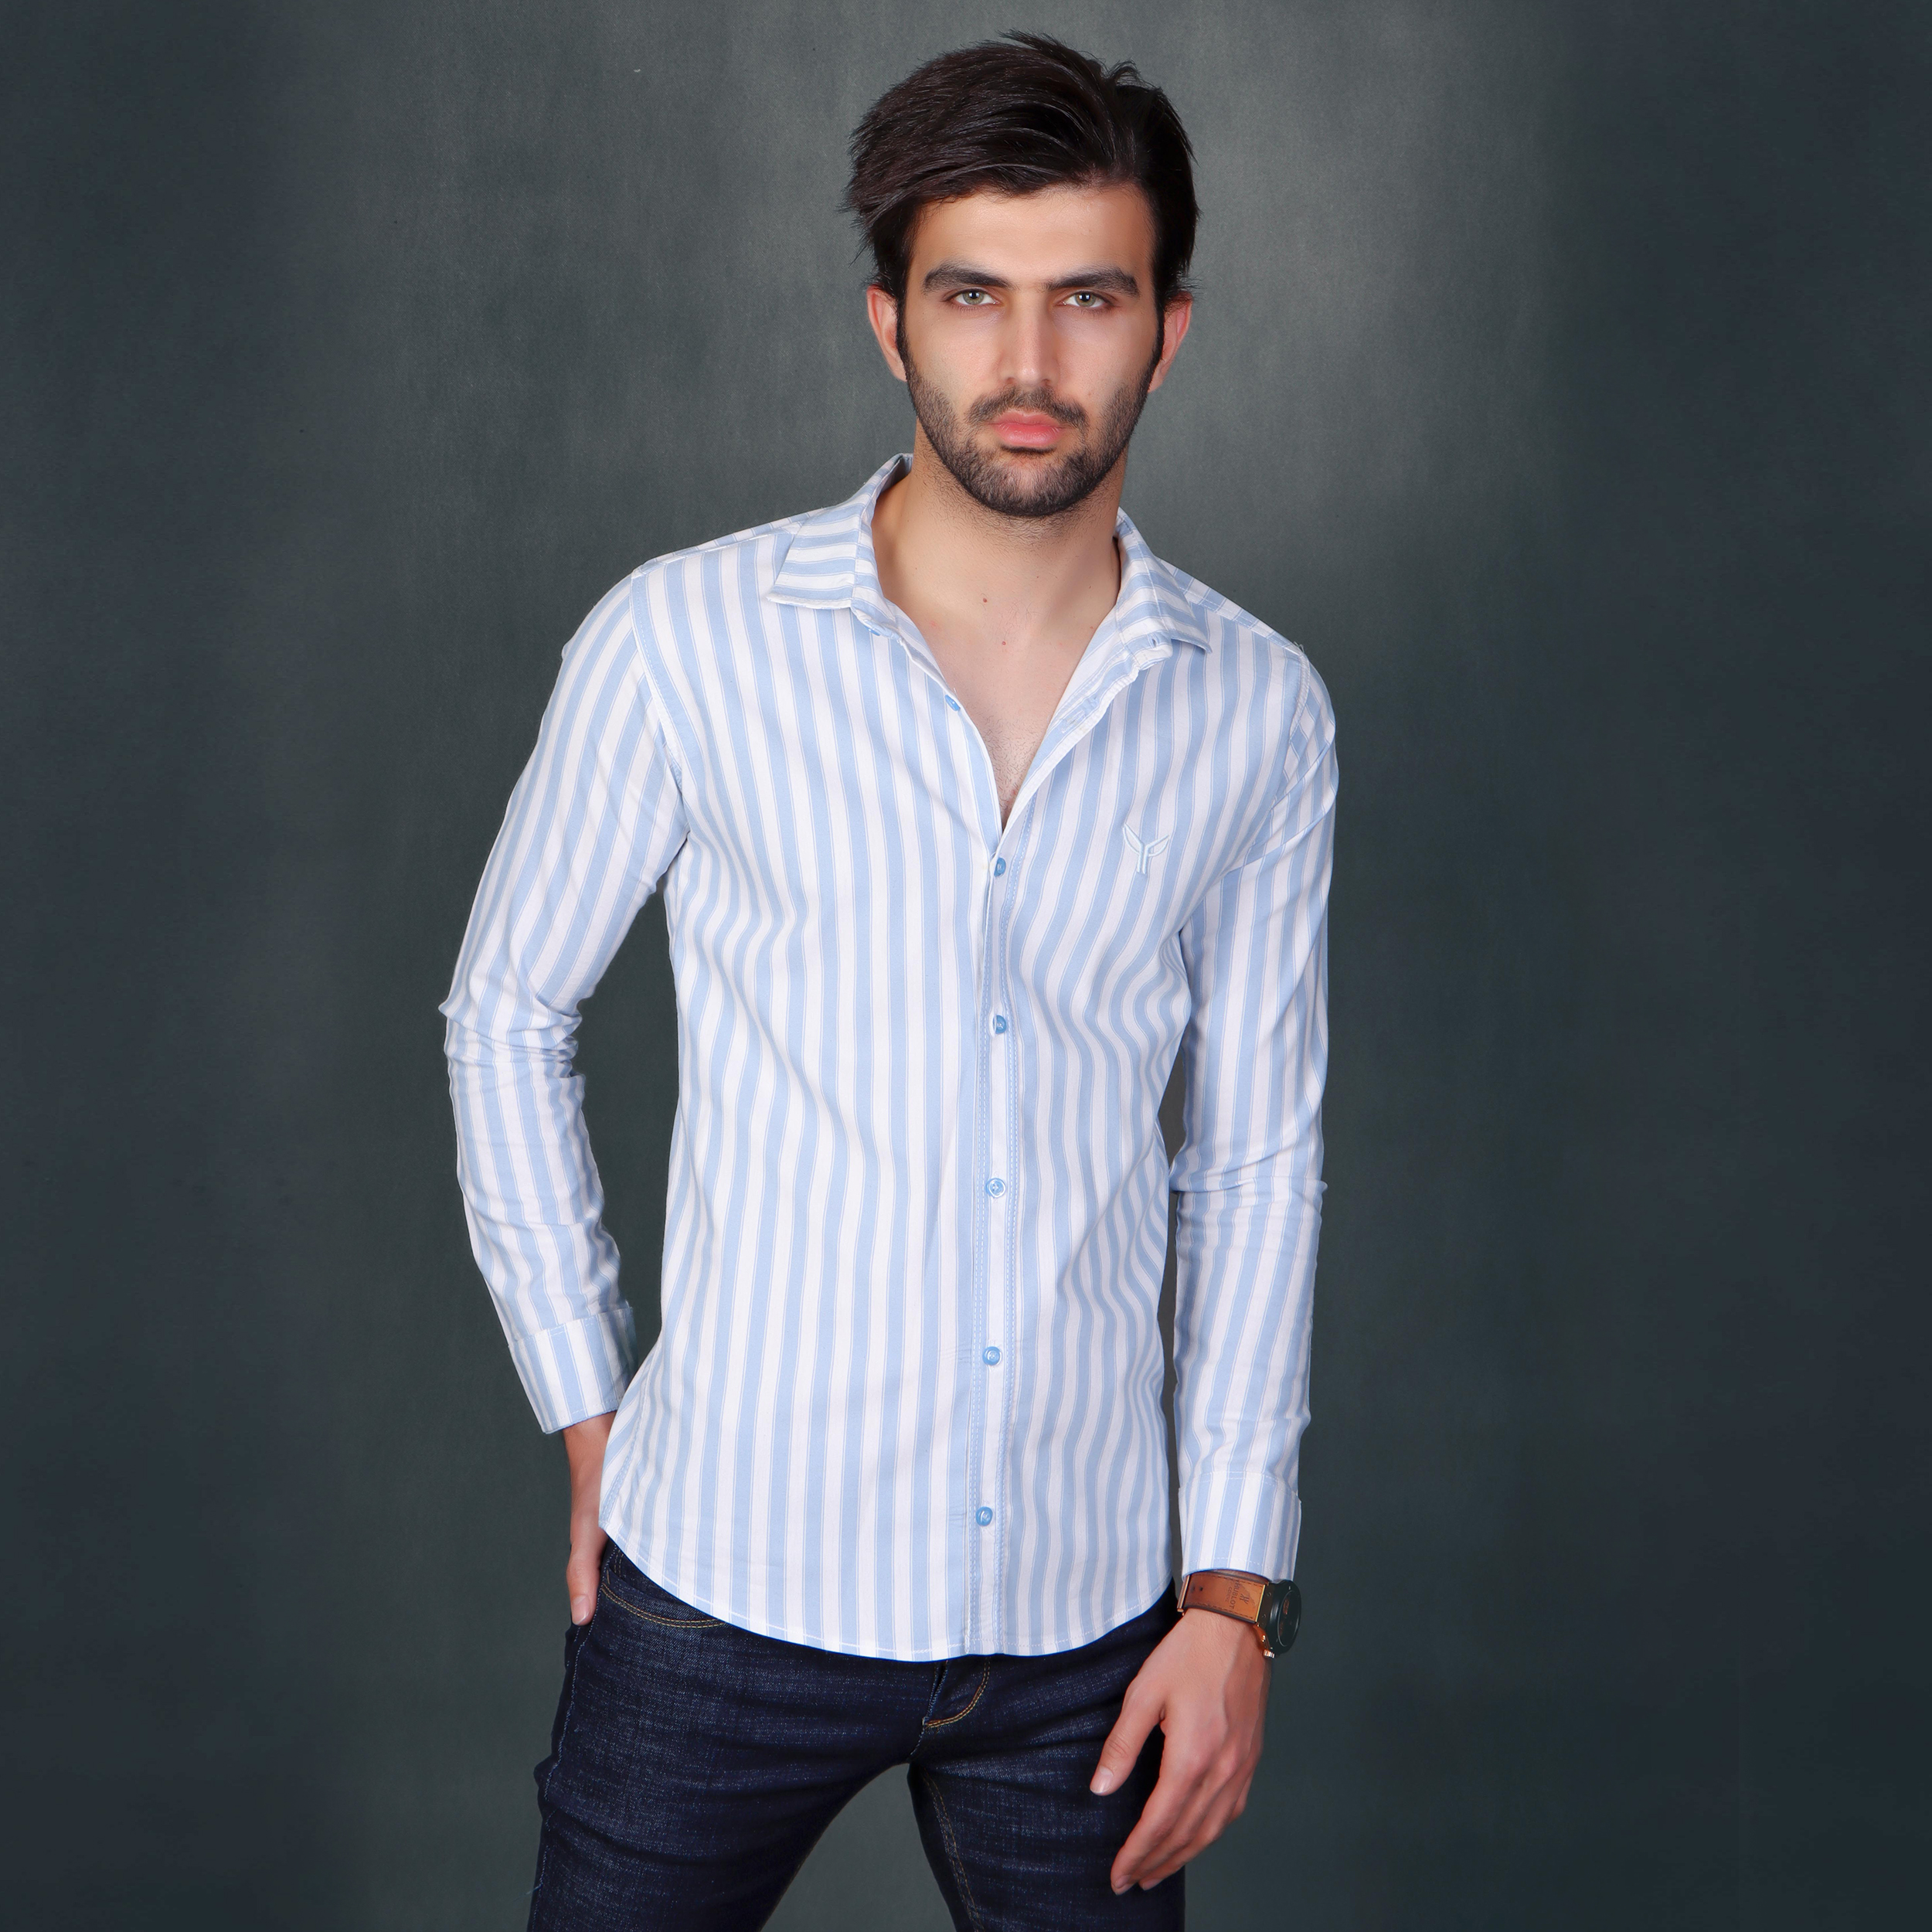 نکته خرید - قیمت روز پیراهن آستین بلند مردانه پیکی پوش مدل M02561 خرید